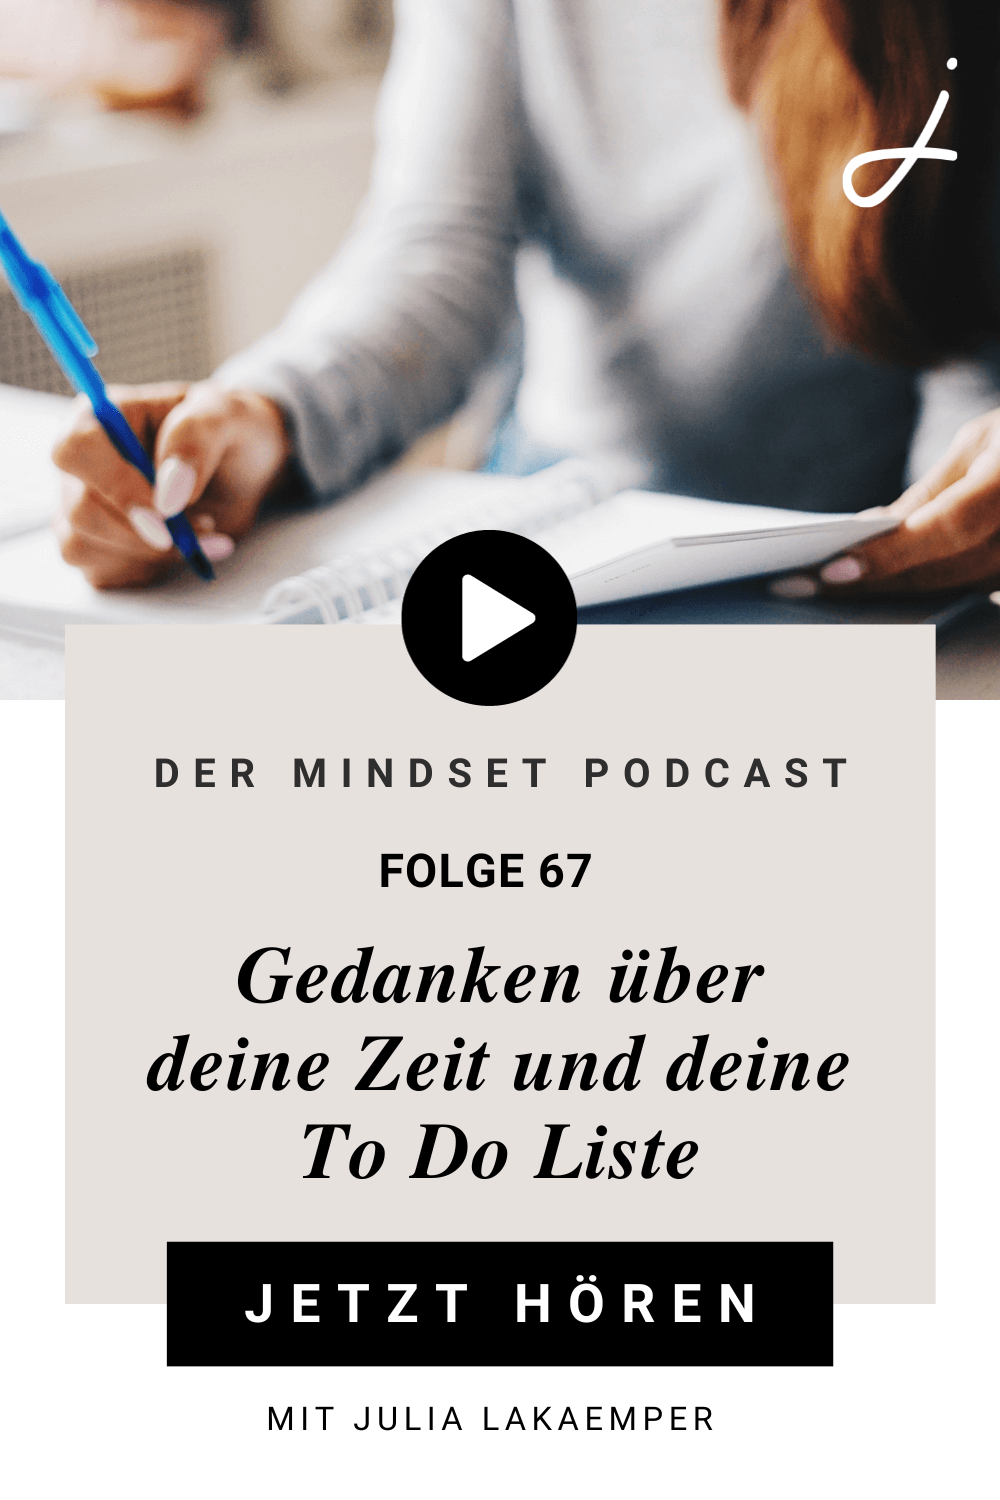 Pinterest Pin zum Podcast-Folge #"Gedanken über deine Zeit und deine To Do Liste"